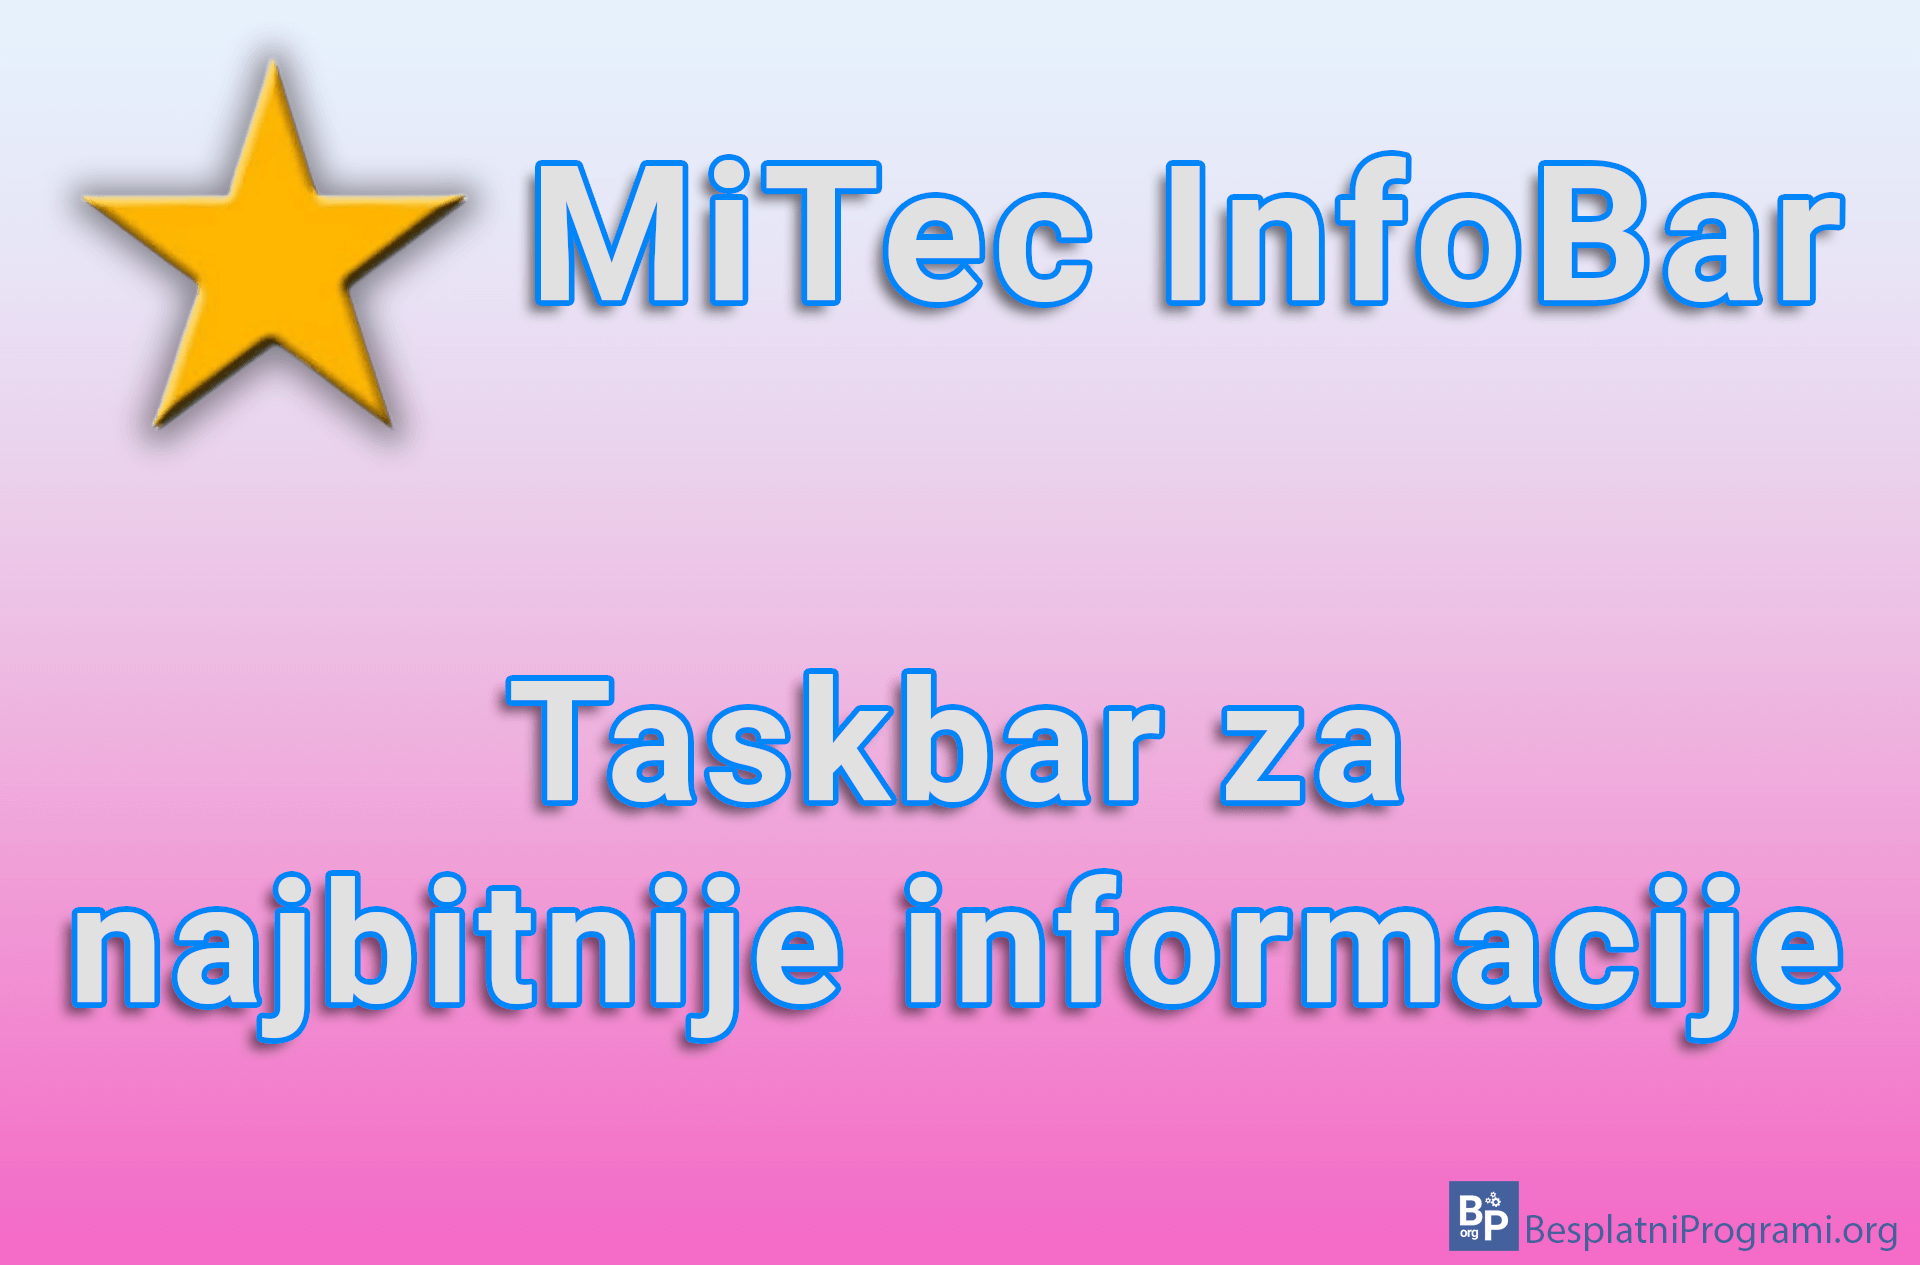 MiTec InfoBar - Taskbar za najbitnije informacije